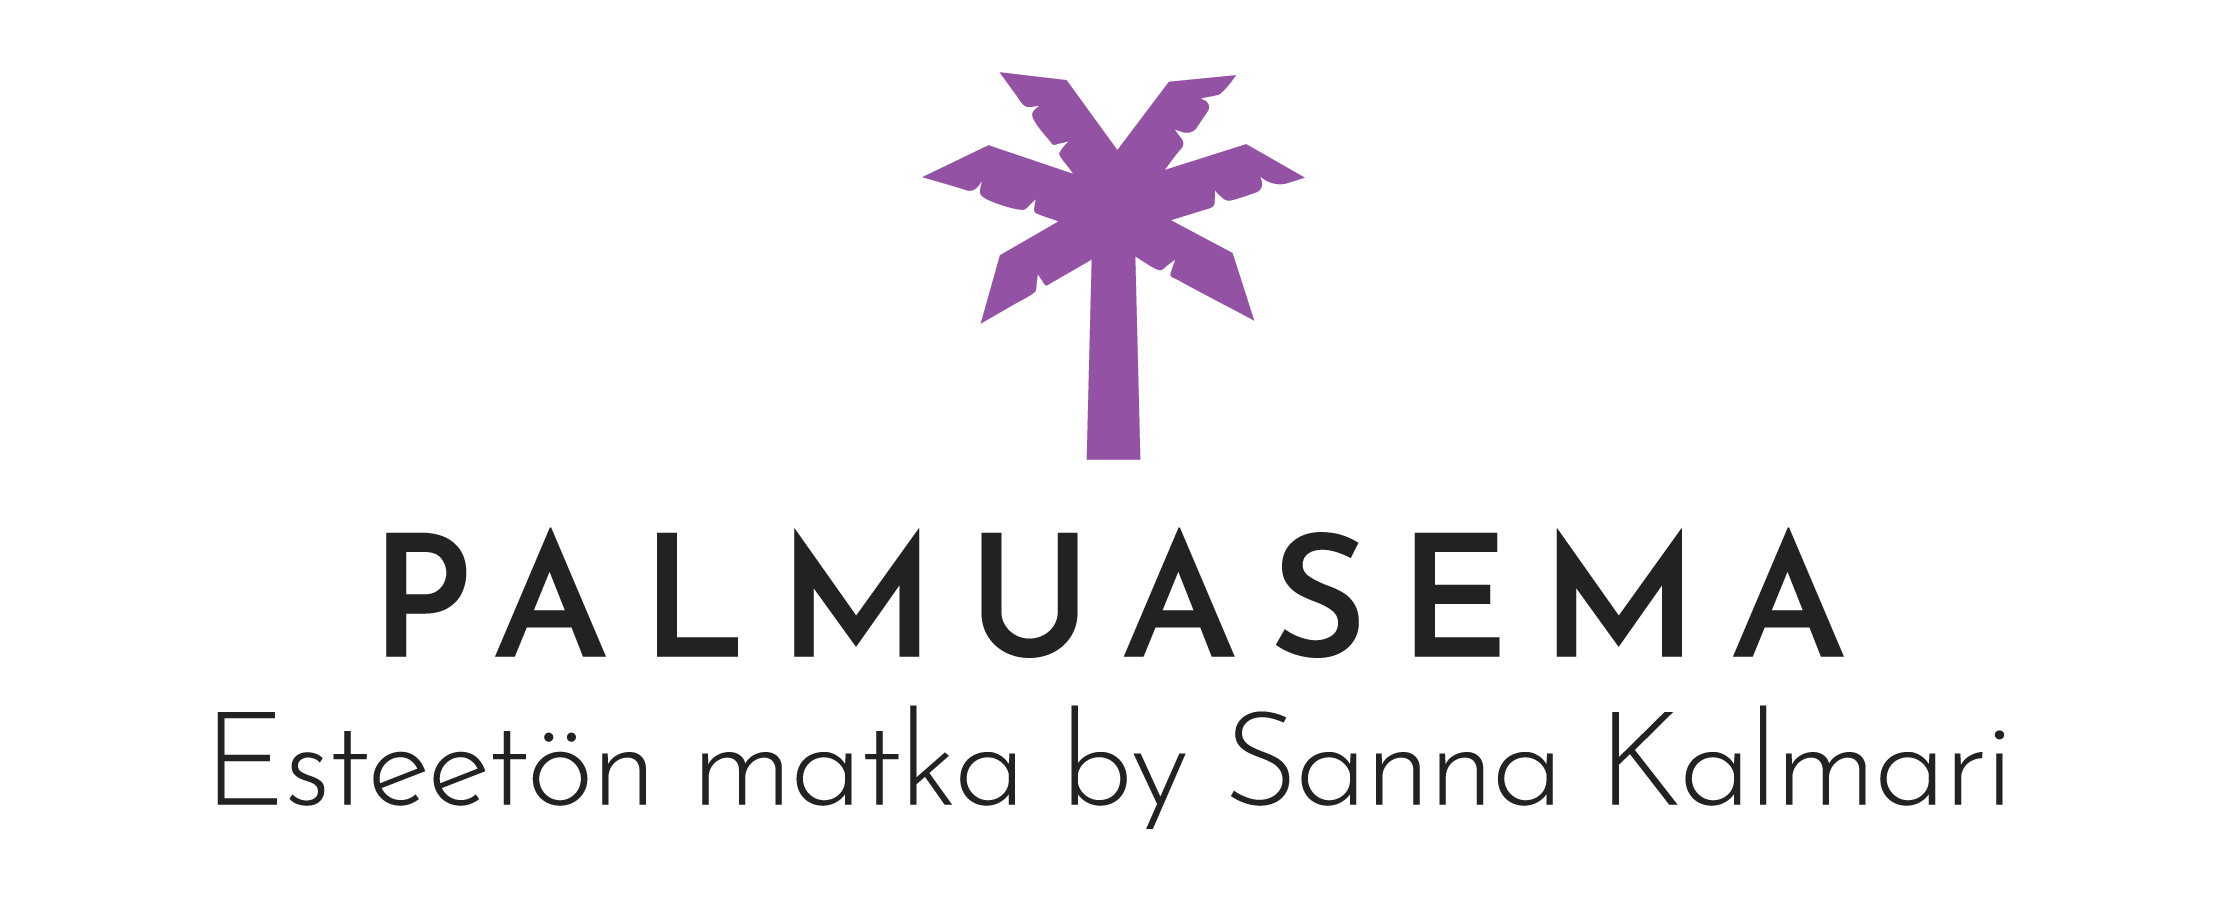 Palmuasema logo